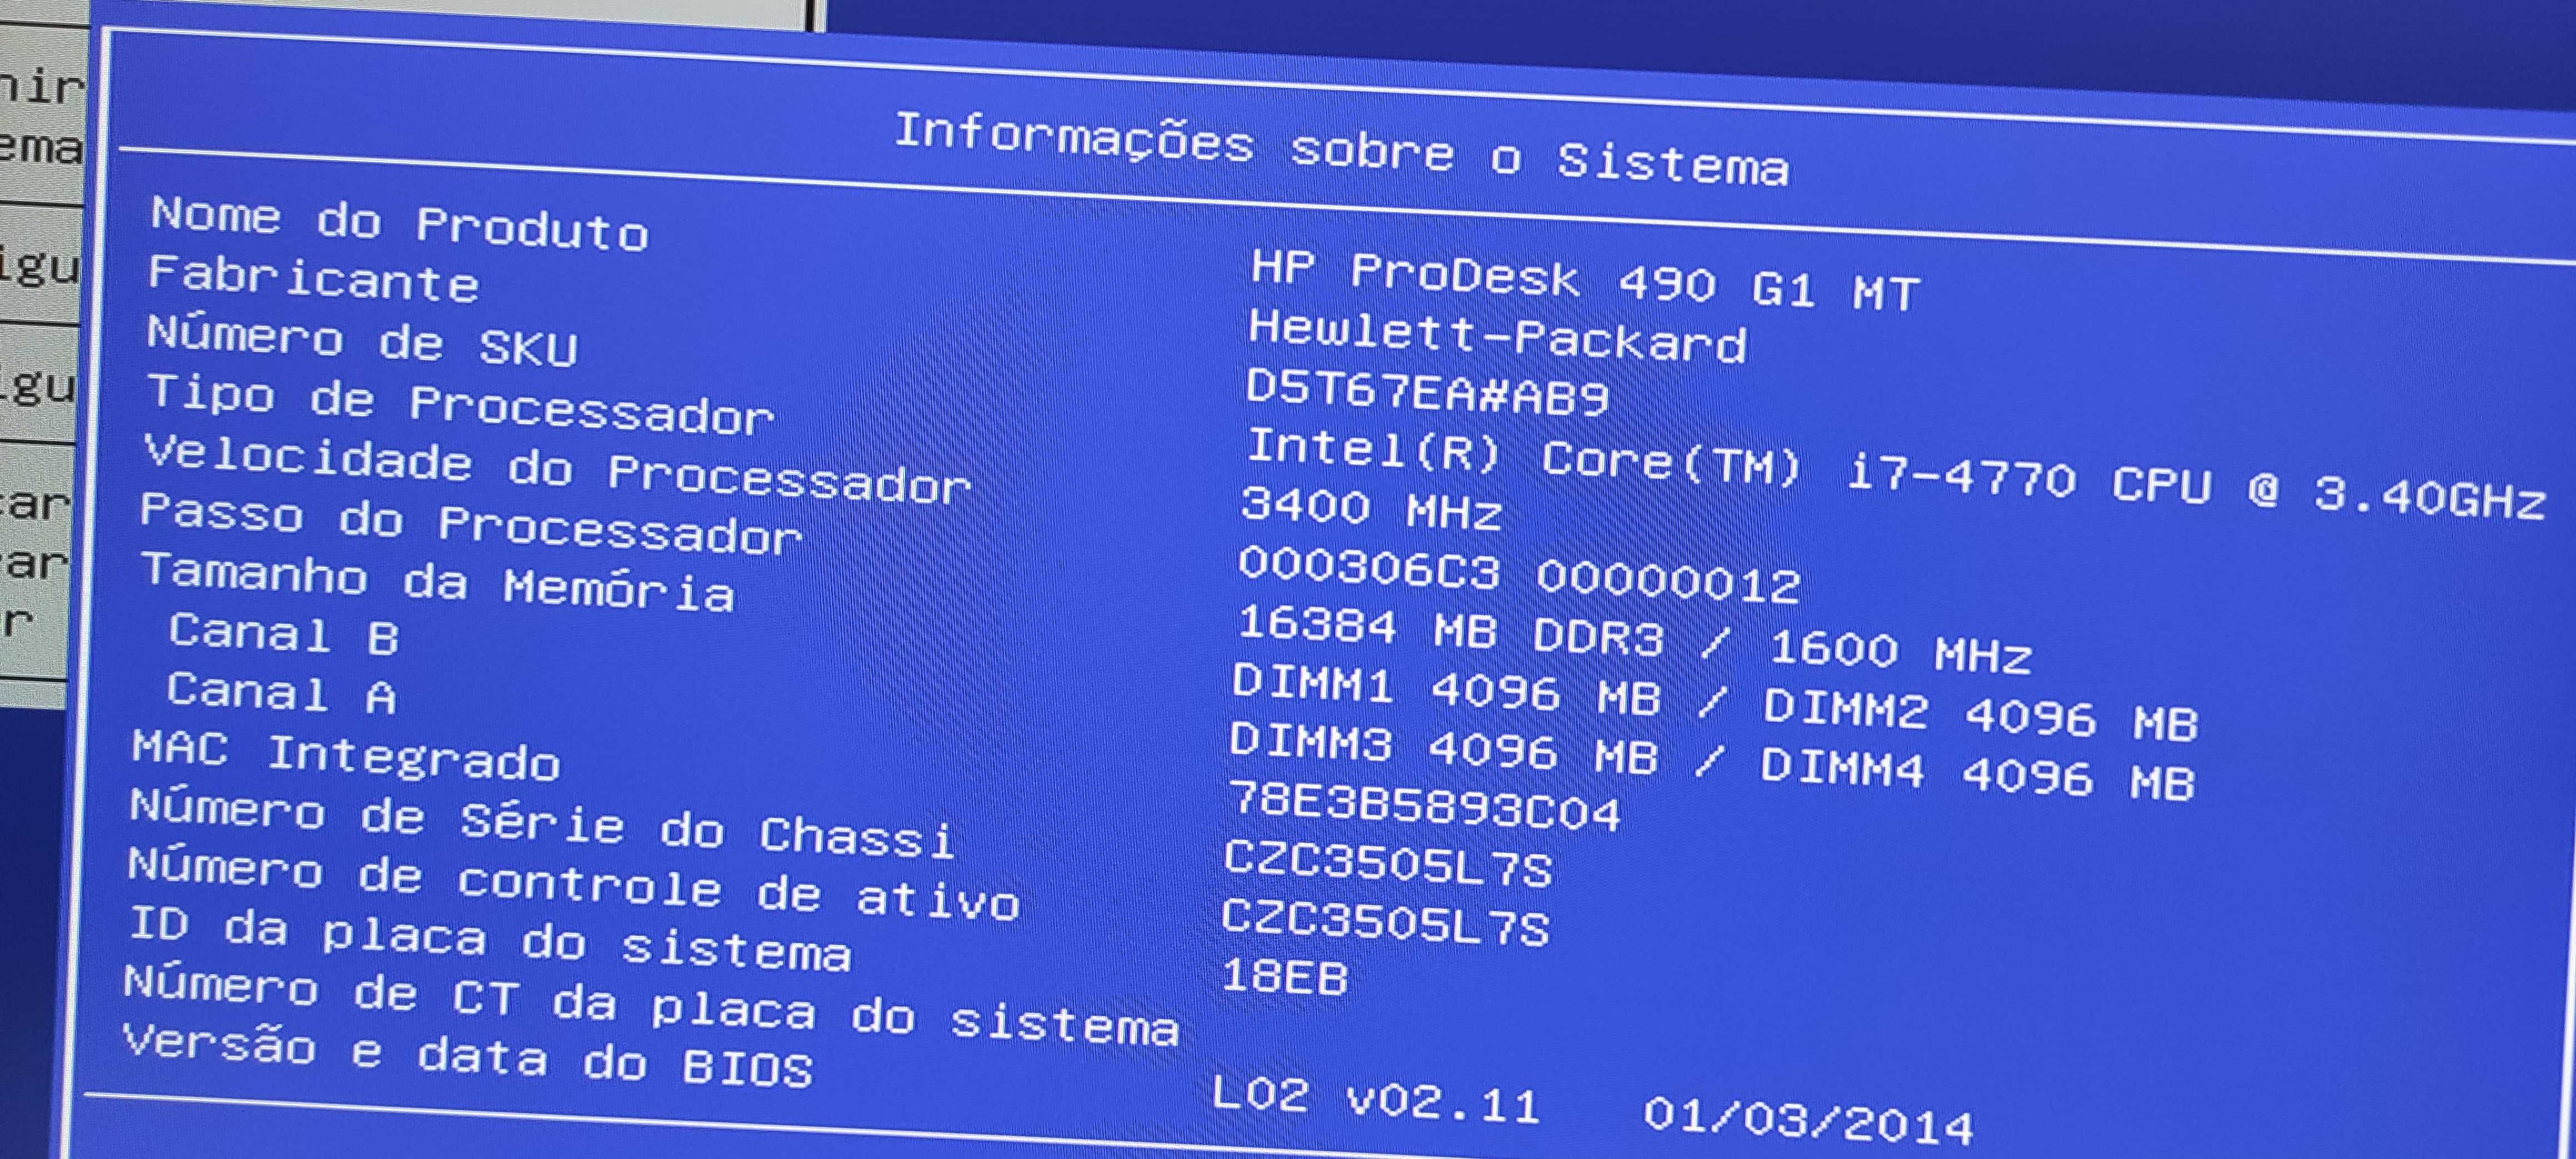 Computador HP Prodesk 490 G1 MT